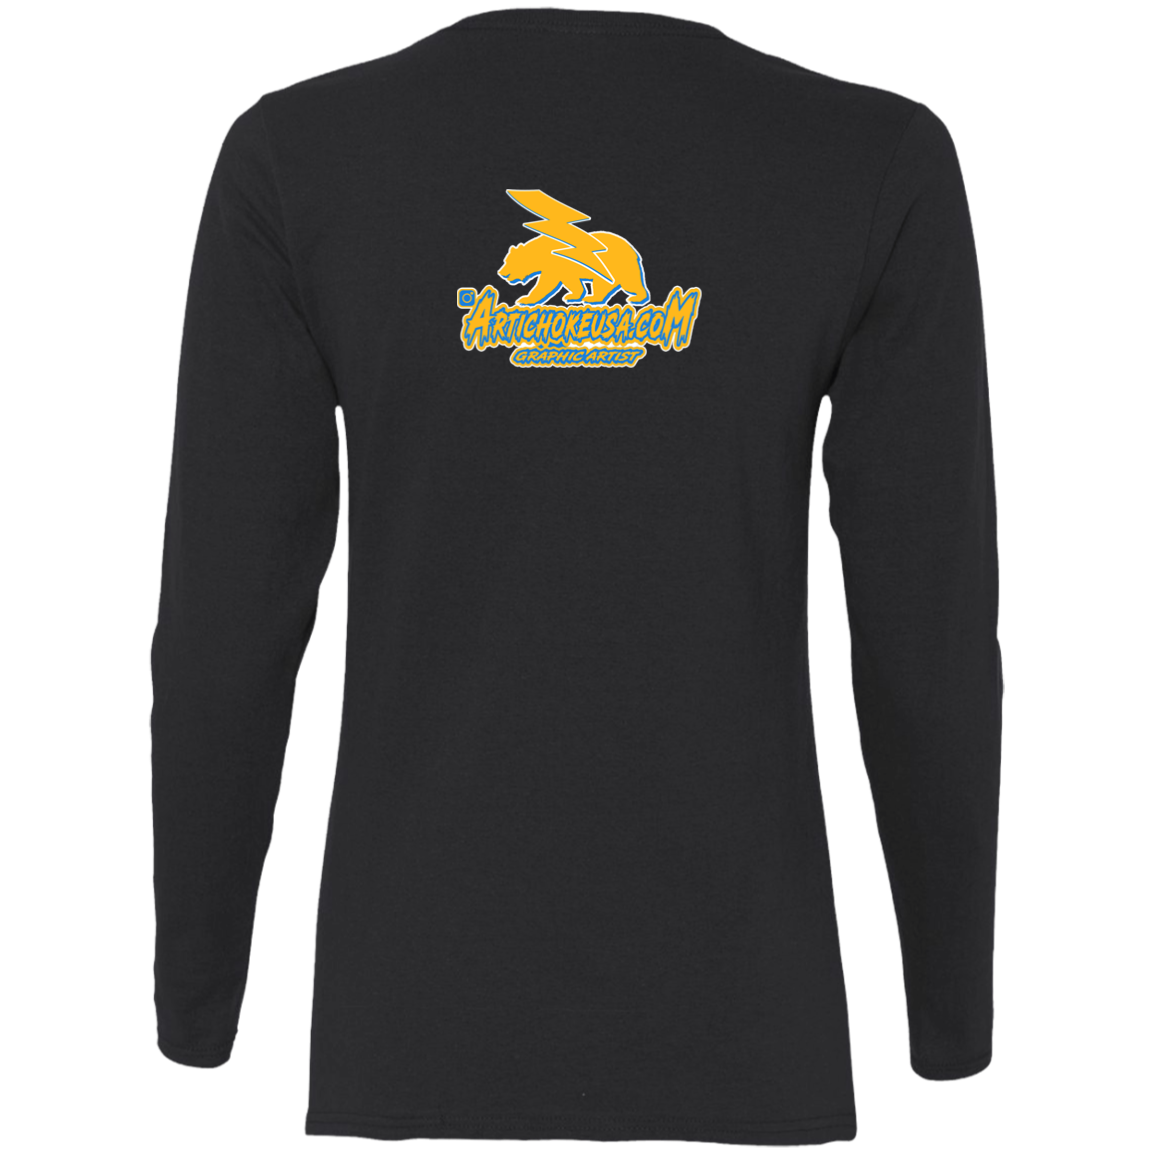 ArtichokeUSA Custom Design. Los Angeles Chargers Fan Art. Ladies' Cotton LS T-Shirt